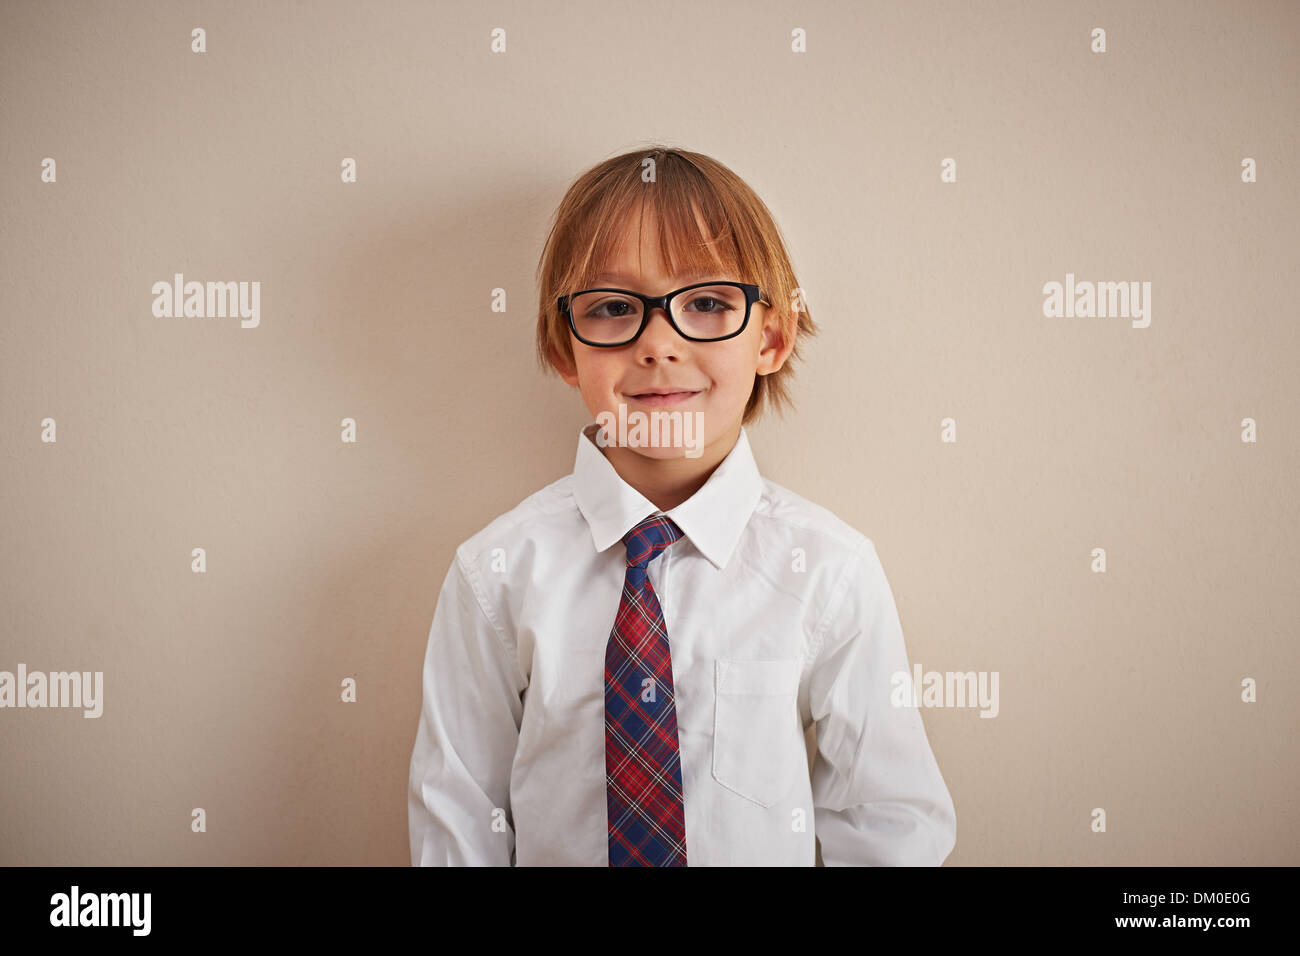 Entreprise Jeune garçon dans une chemise et cravate Banque D'Images